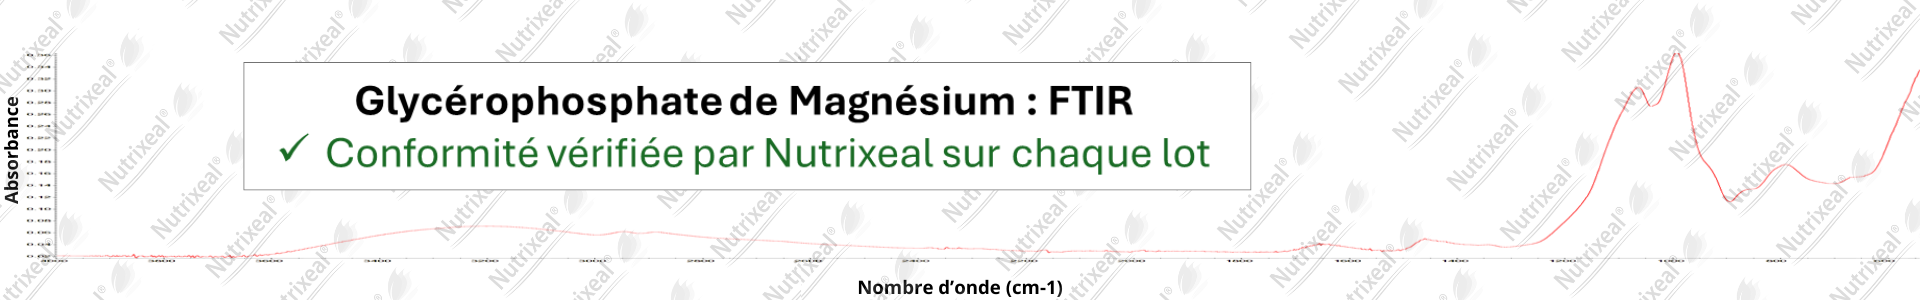 Spectre FTIR de glycérophosphate de magnésium